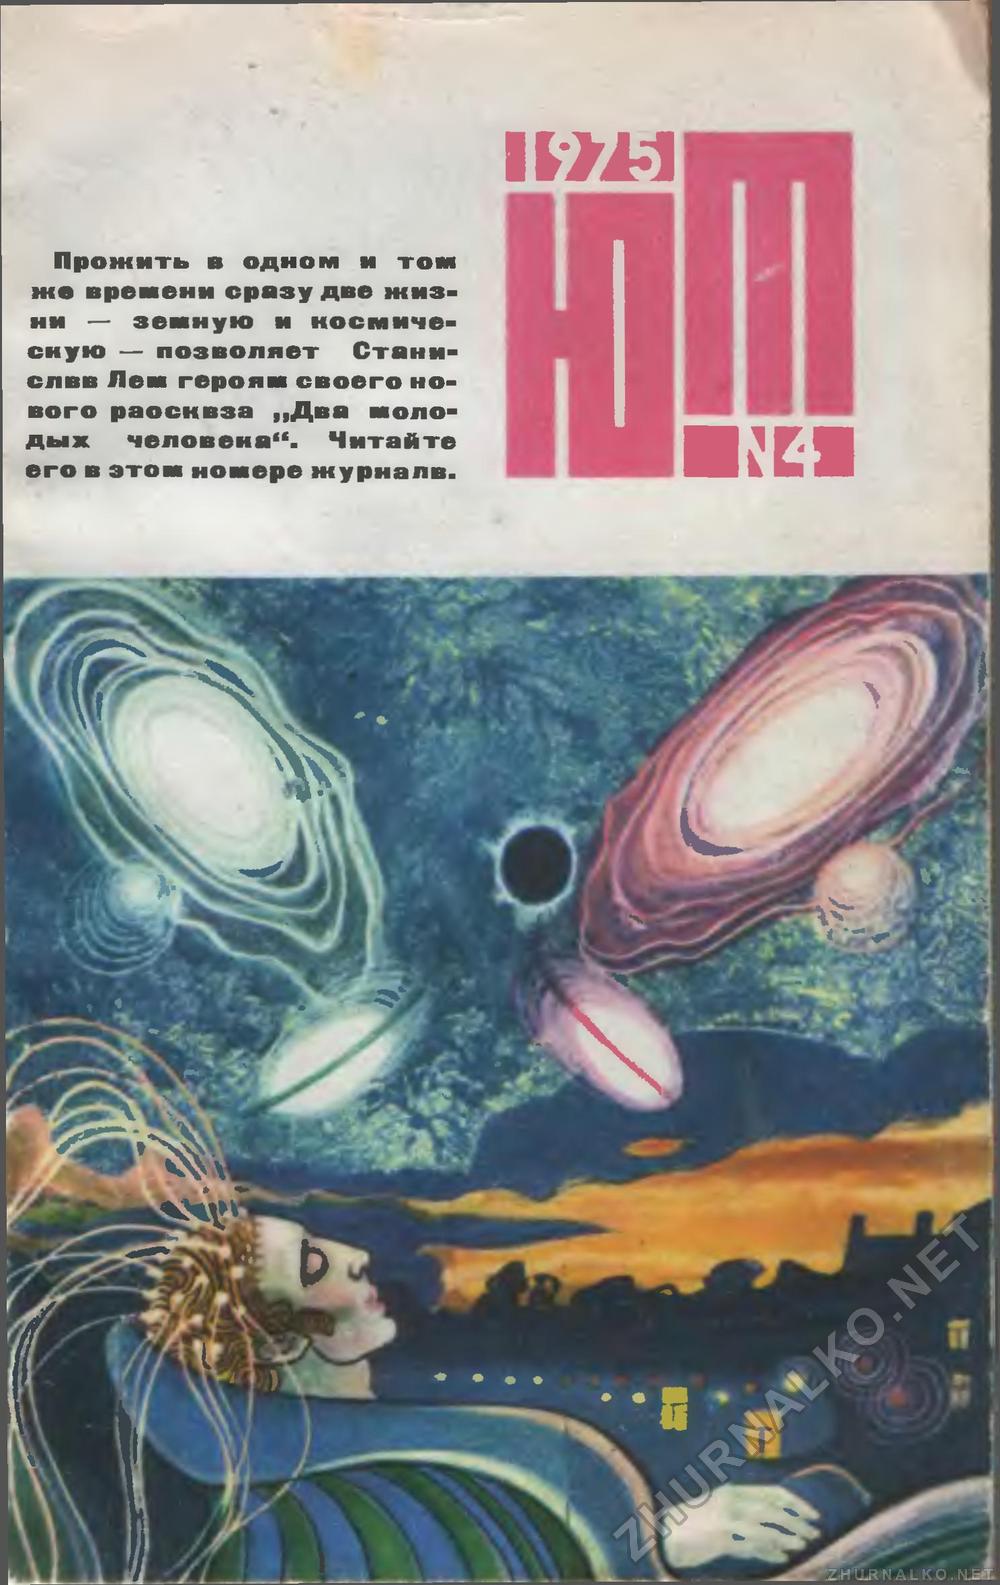   1975-04,  1